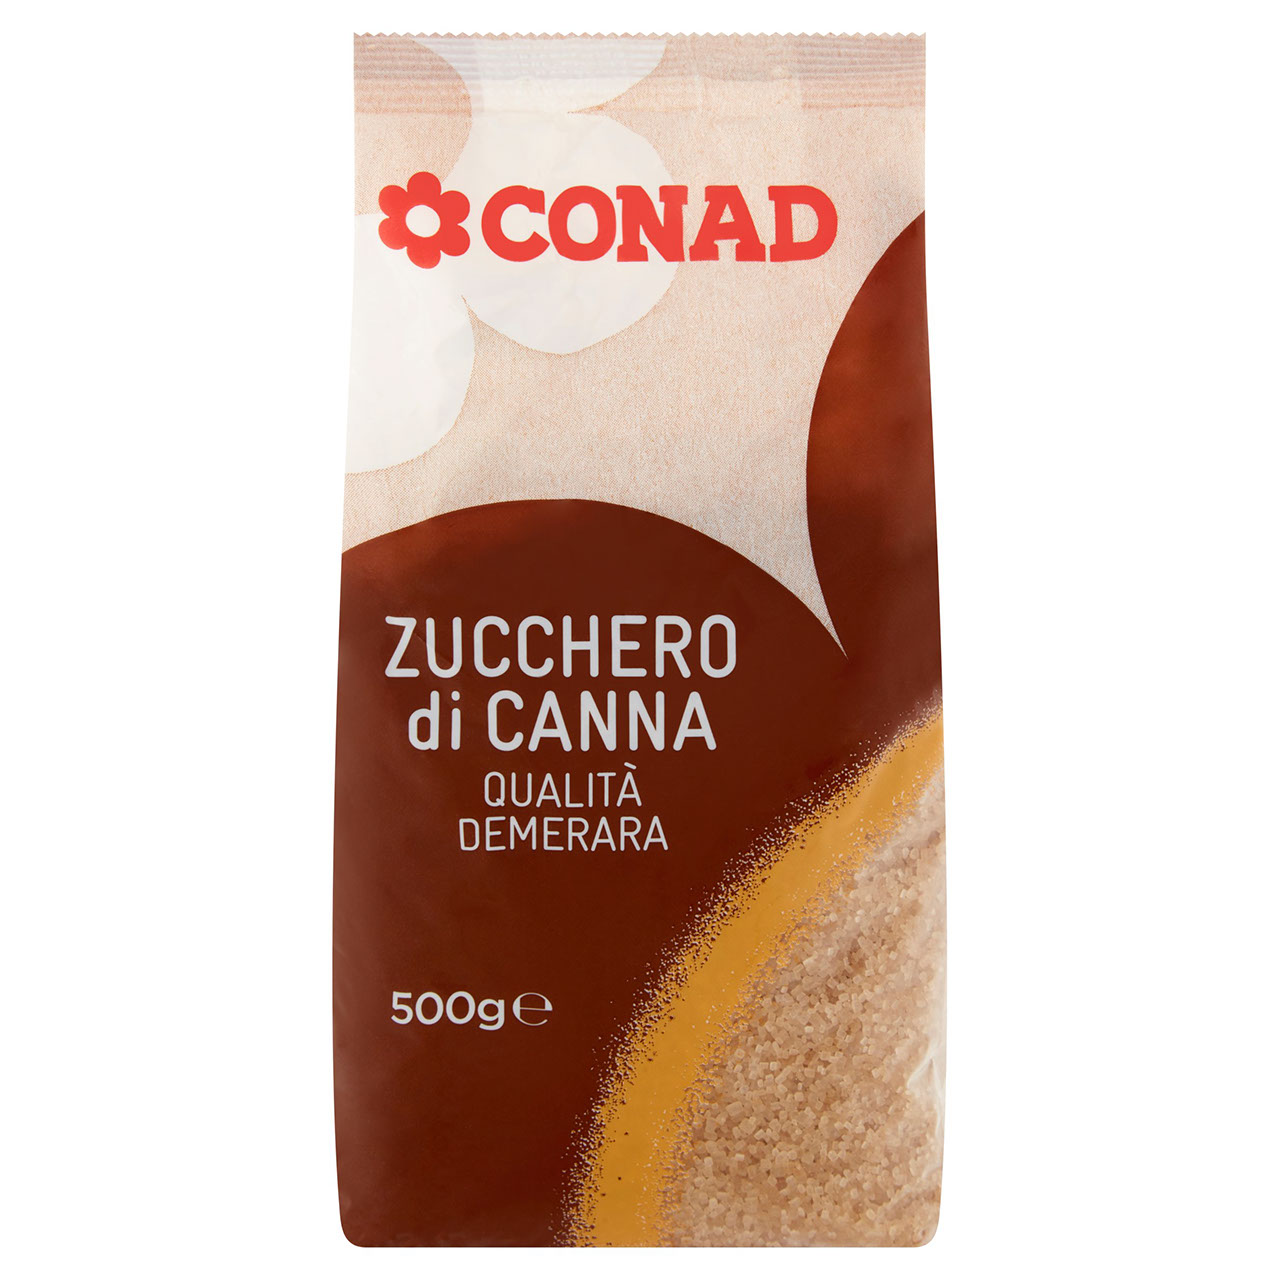 Esotico Zucchero di Canna Conad in vendita online